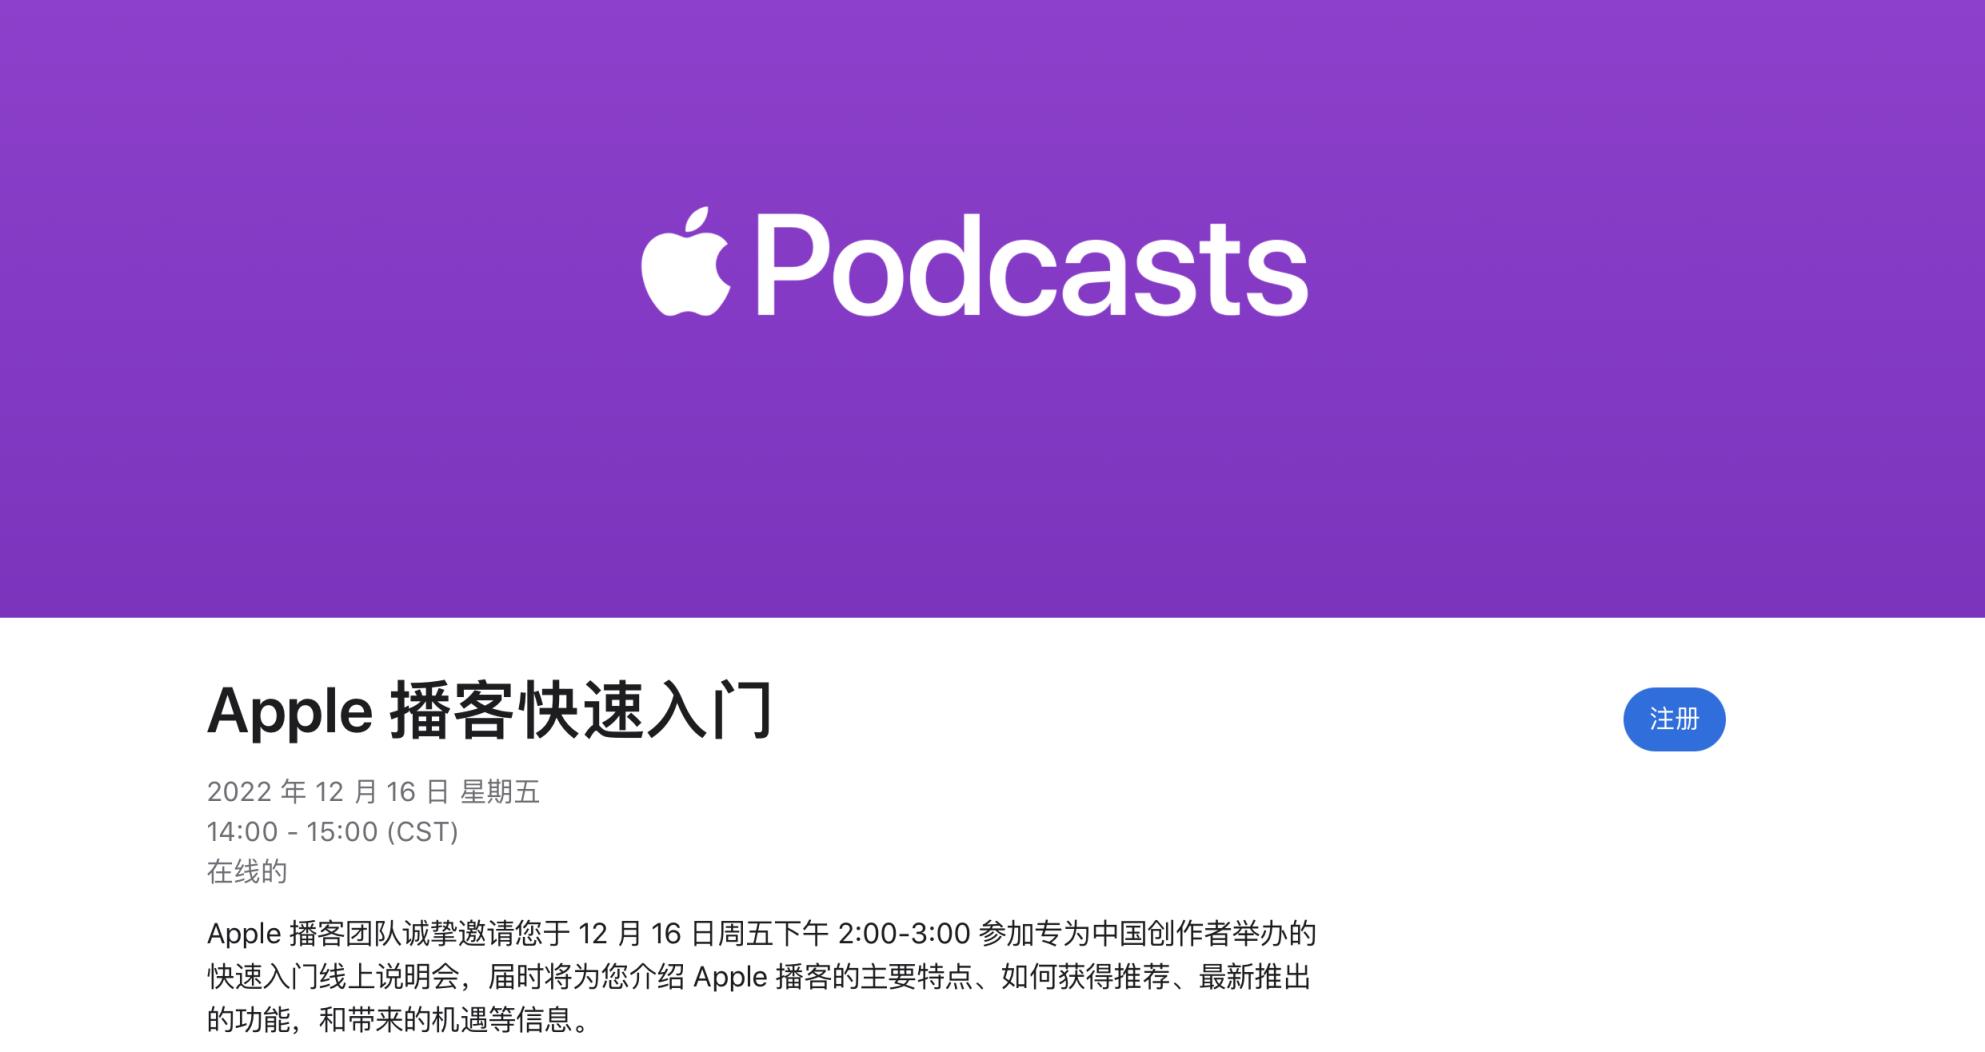 苹果将为中国播客创作者举行说明会 帮助更多人创收